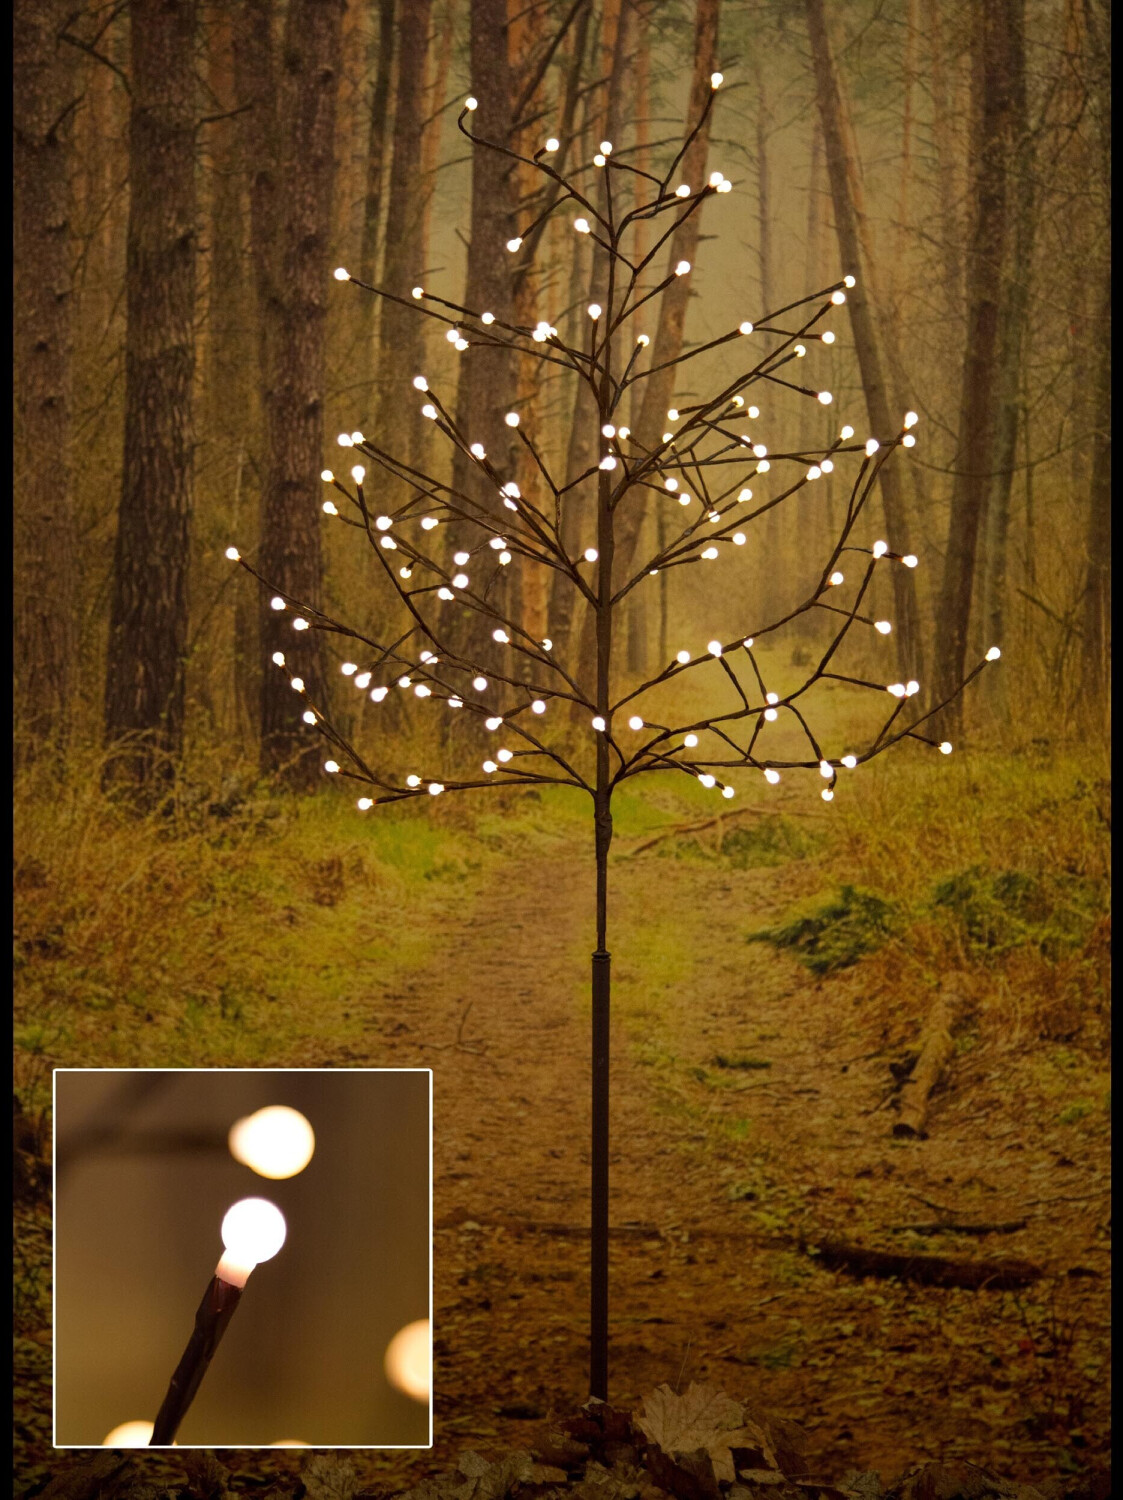 Konstsmide LED Lichterbaum weiß (3385-100) ab 150,00 €